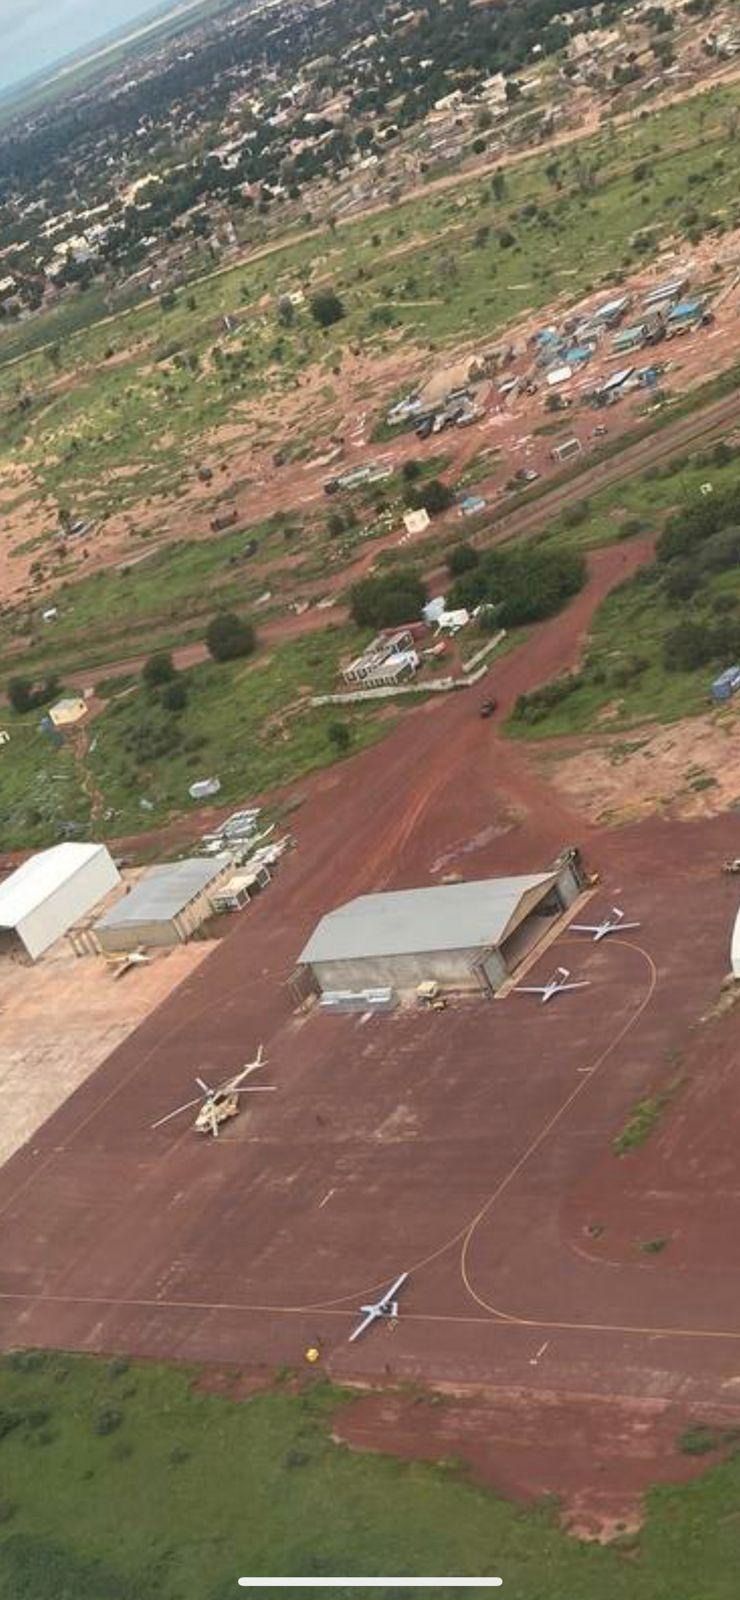 Турецькі безпілотники Bayraktar виявлені на військовій базі ПВК Вагнера в Малі
